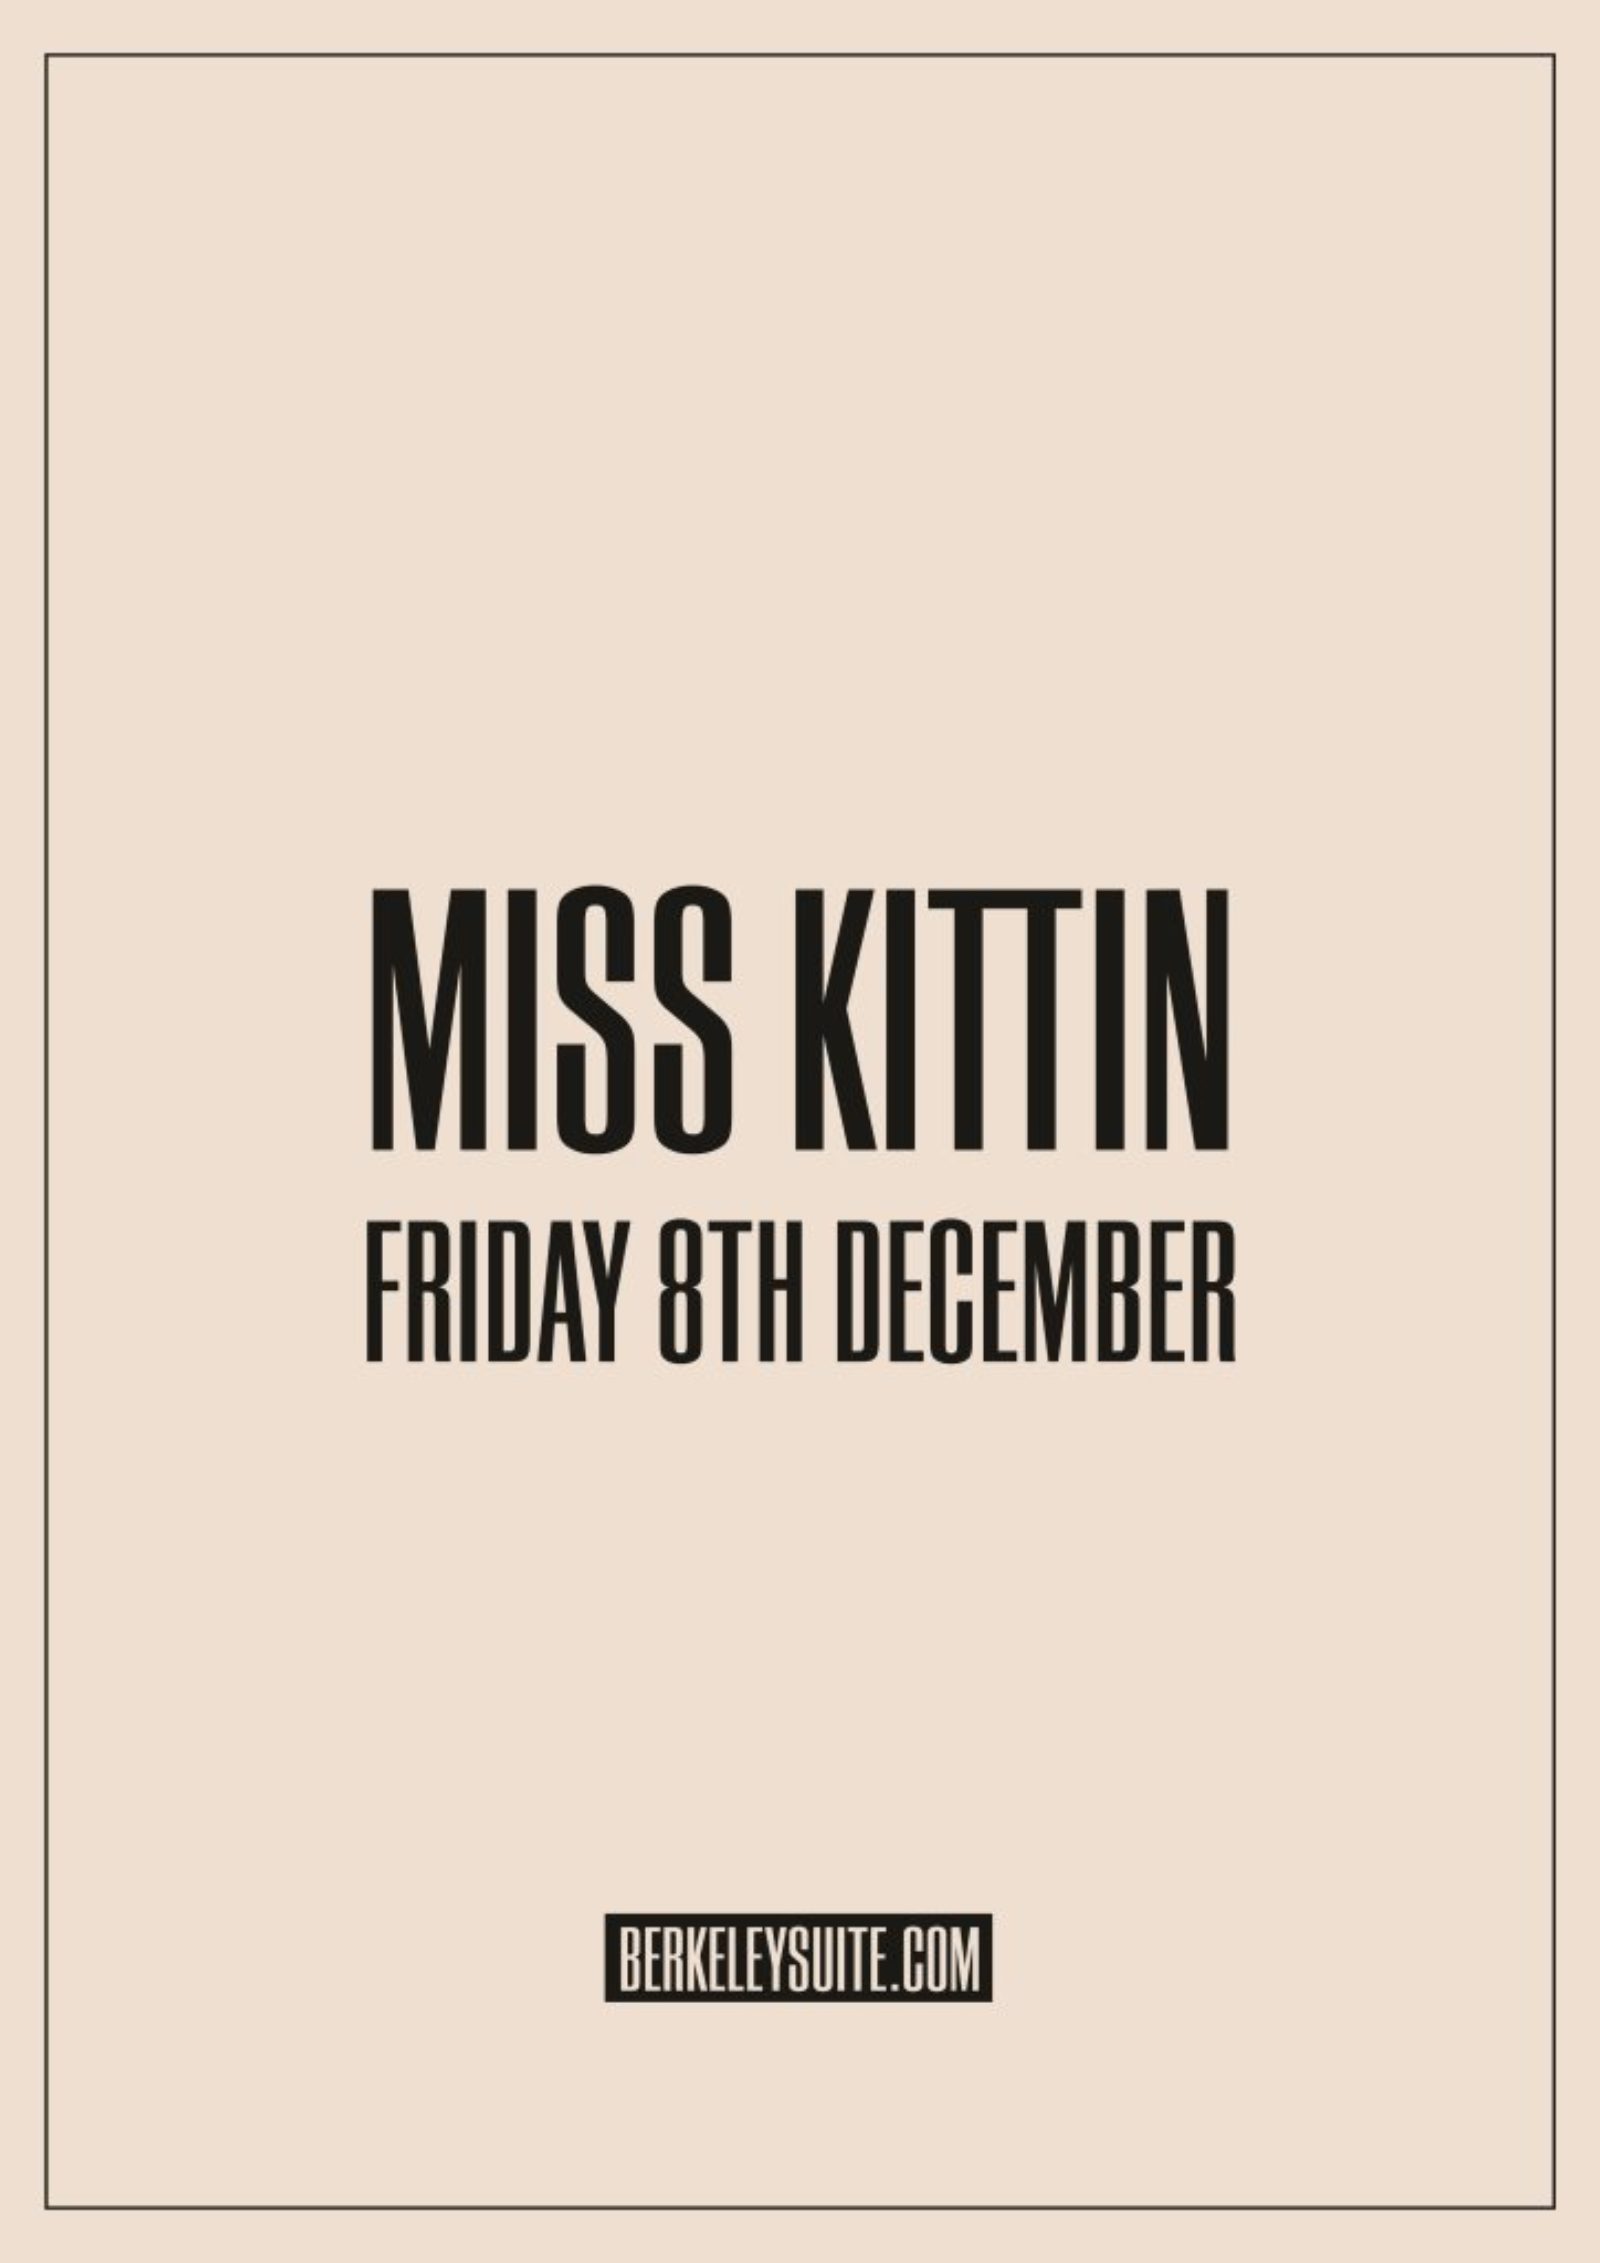 MISS KITTIN